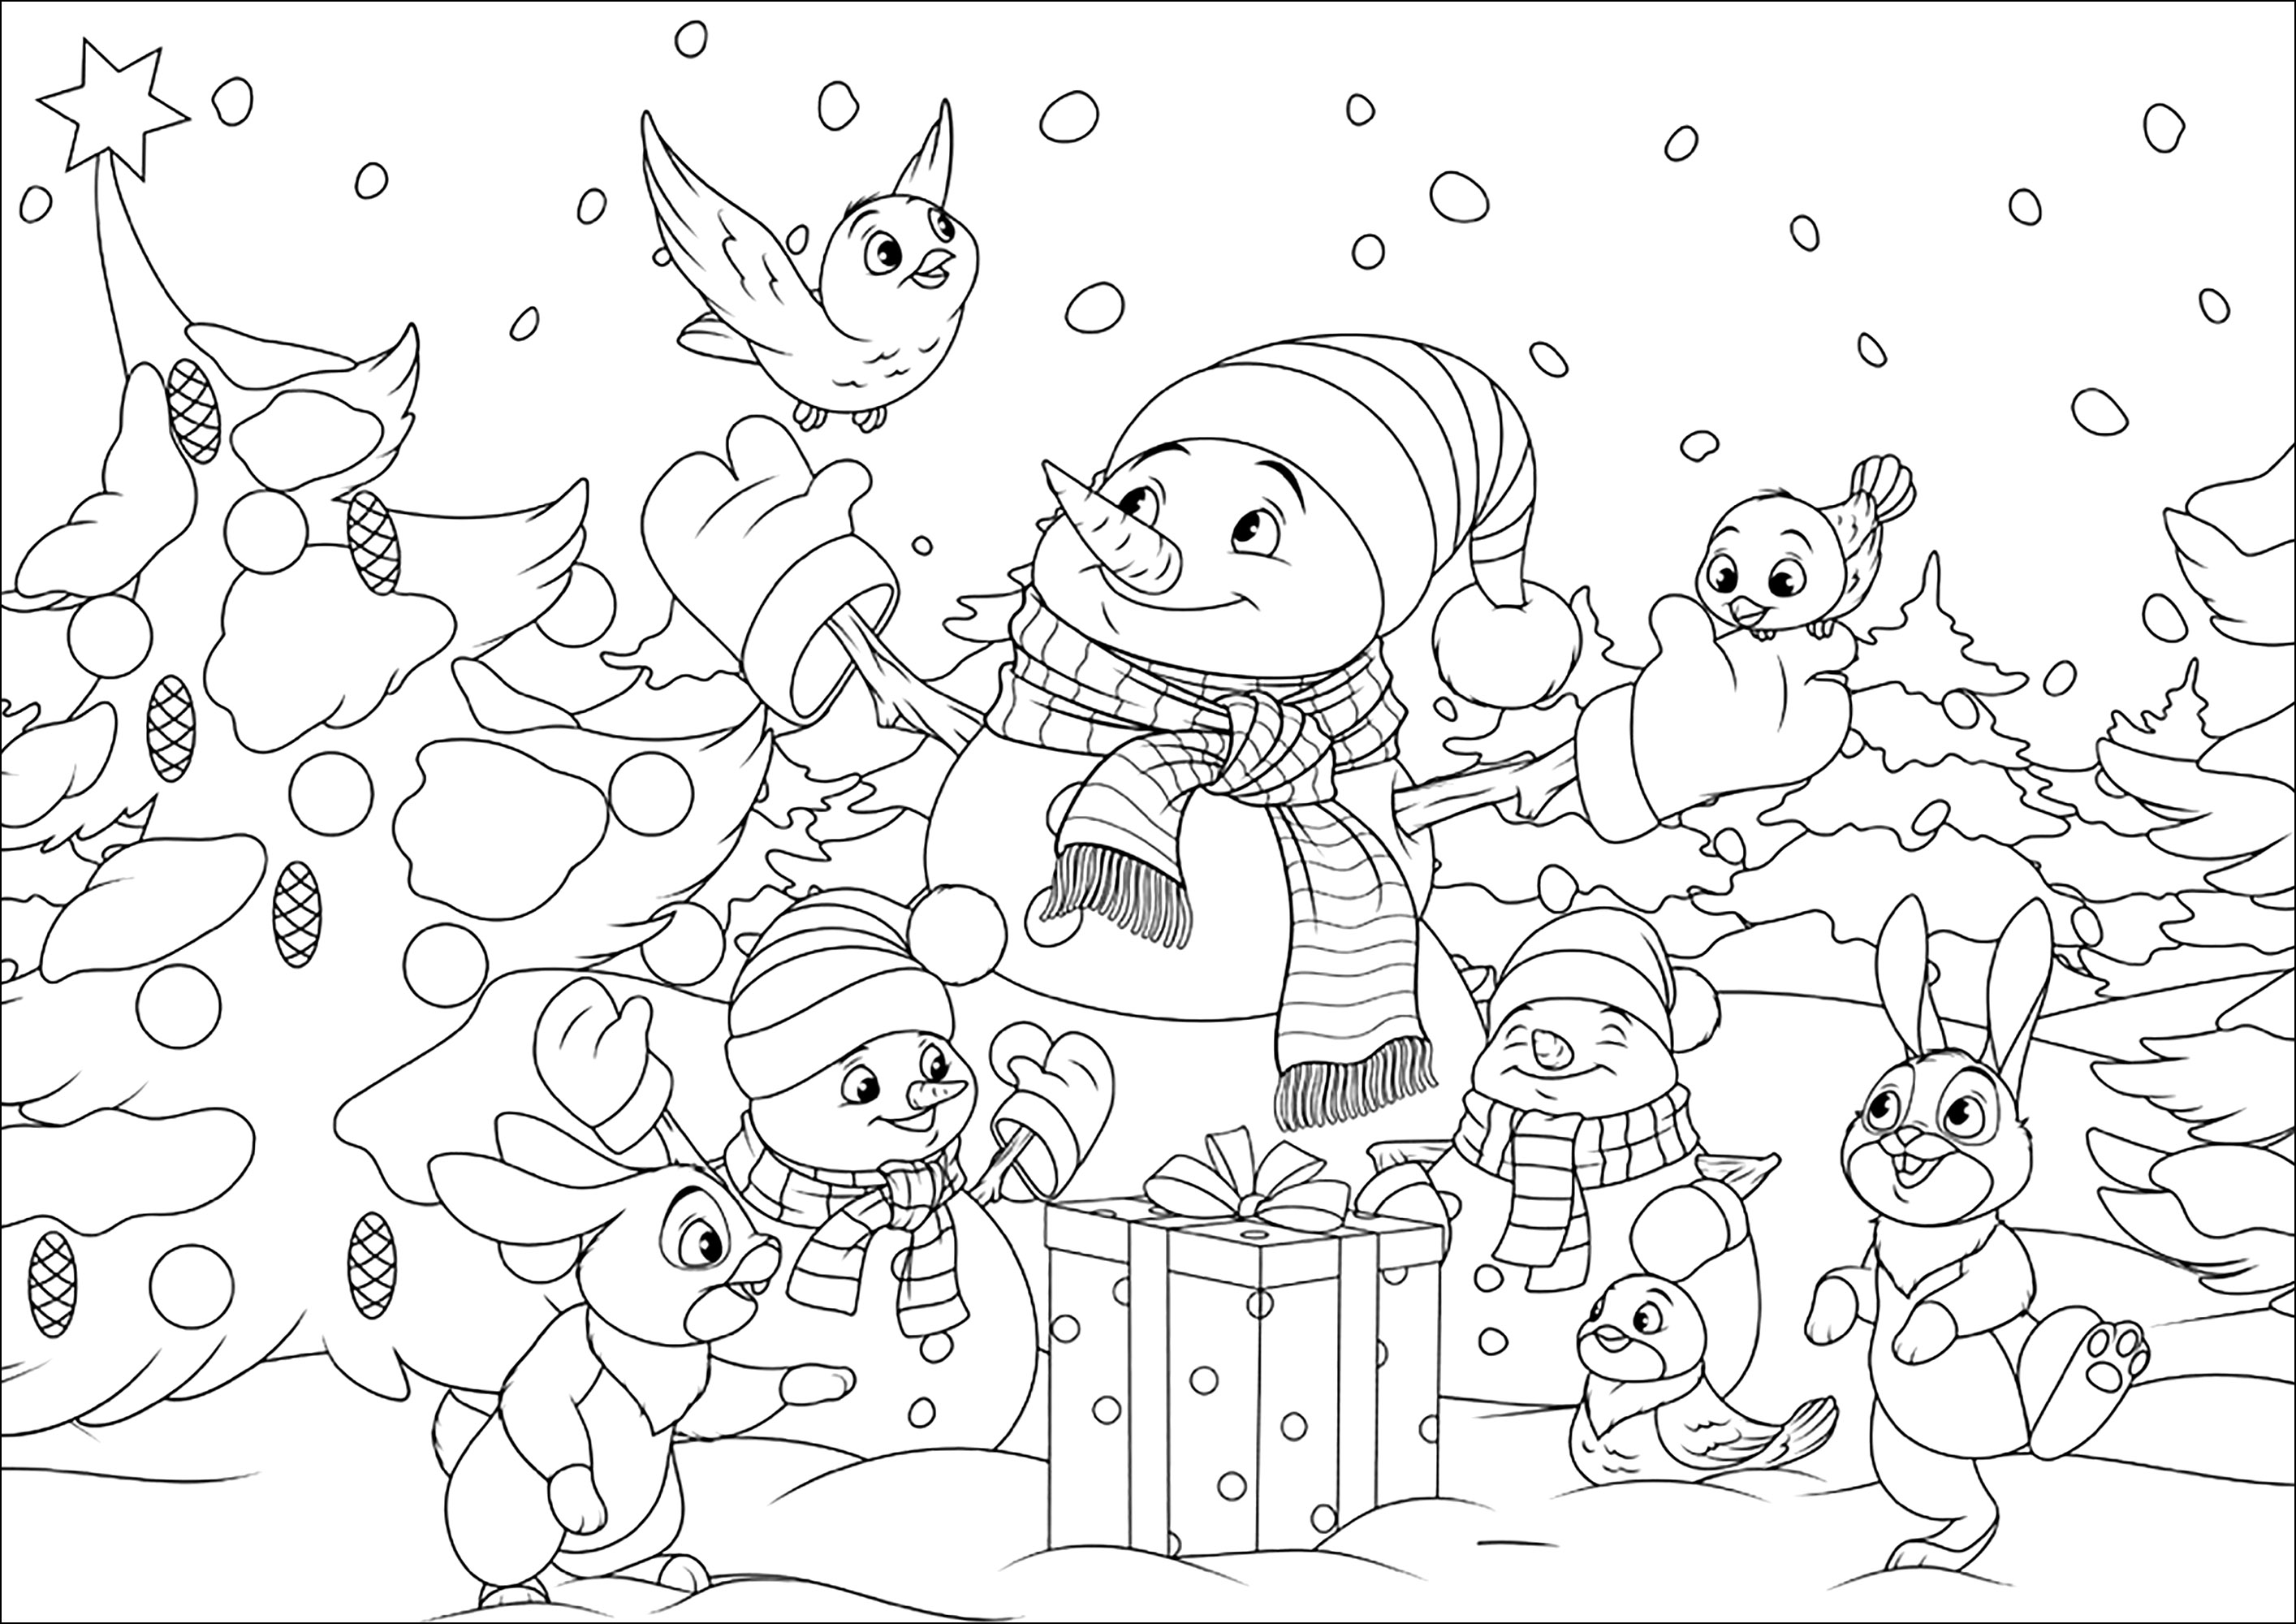 Schneemänner und ihre Waldfreunde. Male diese hübschen Schneemänner und ihre Hasen- und Vogelfreunde in einer verschneiten Weihnachtslandschaft aus, Quelle : 123rf   Künstler : Andrey1978